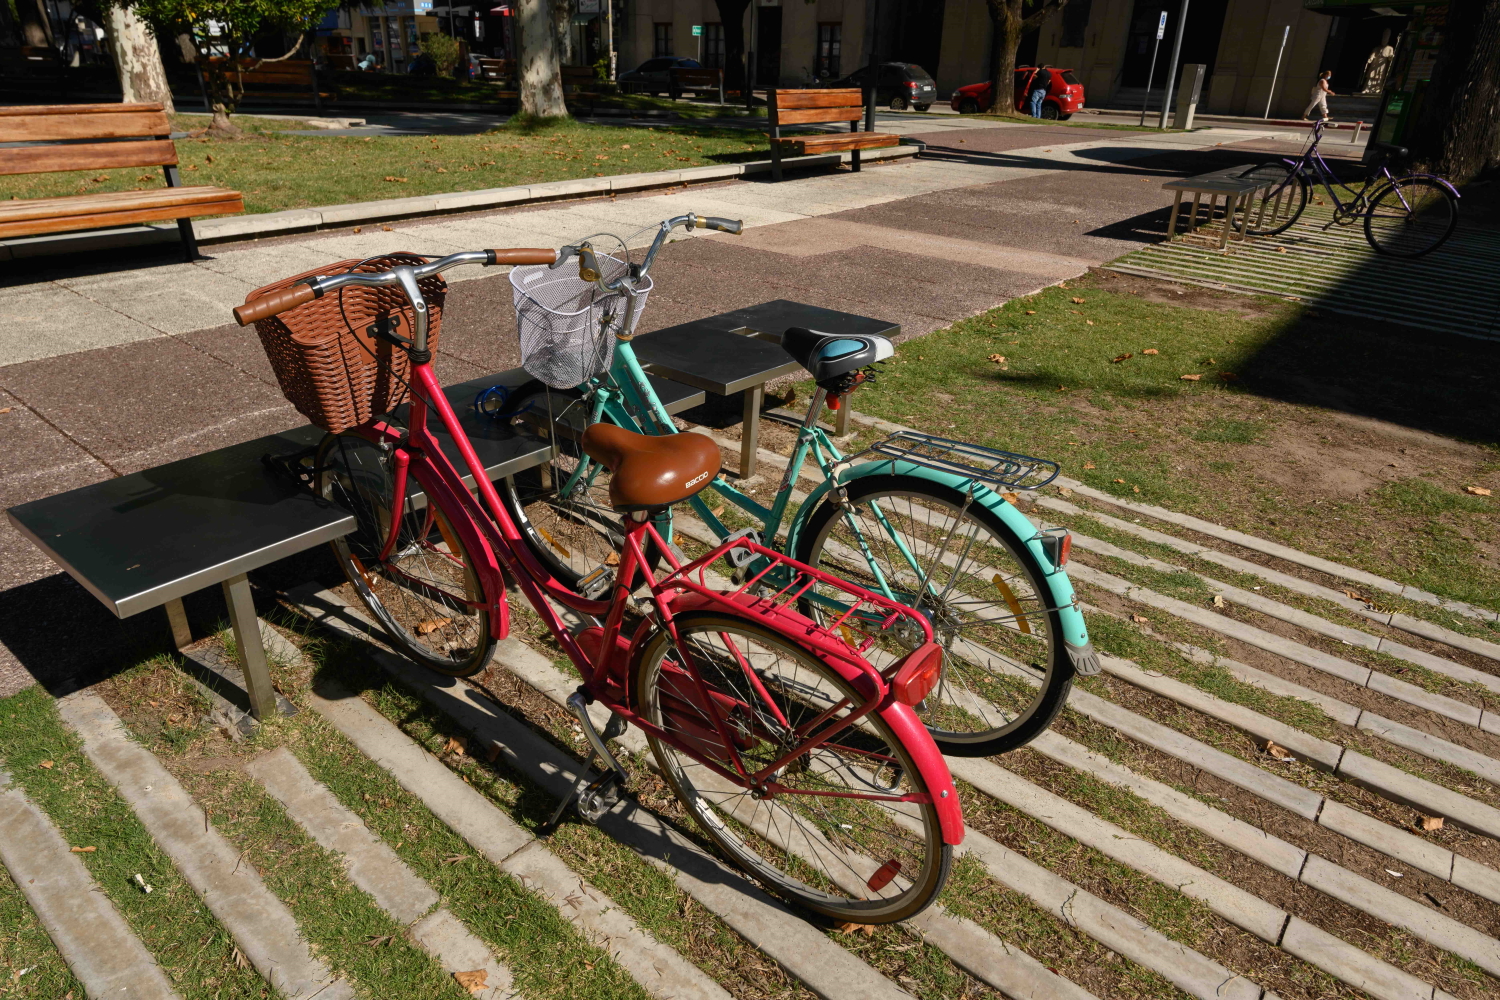 Diseño urbano para poner bicicletas ubicado en la Plaza Canelones.